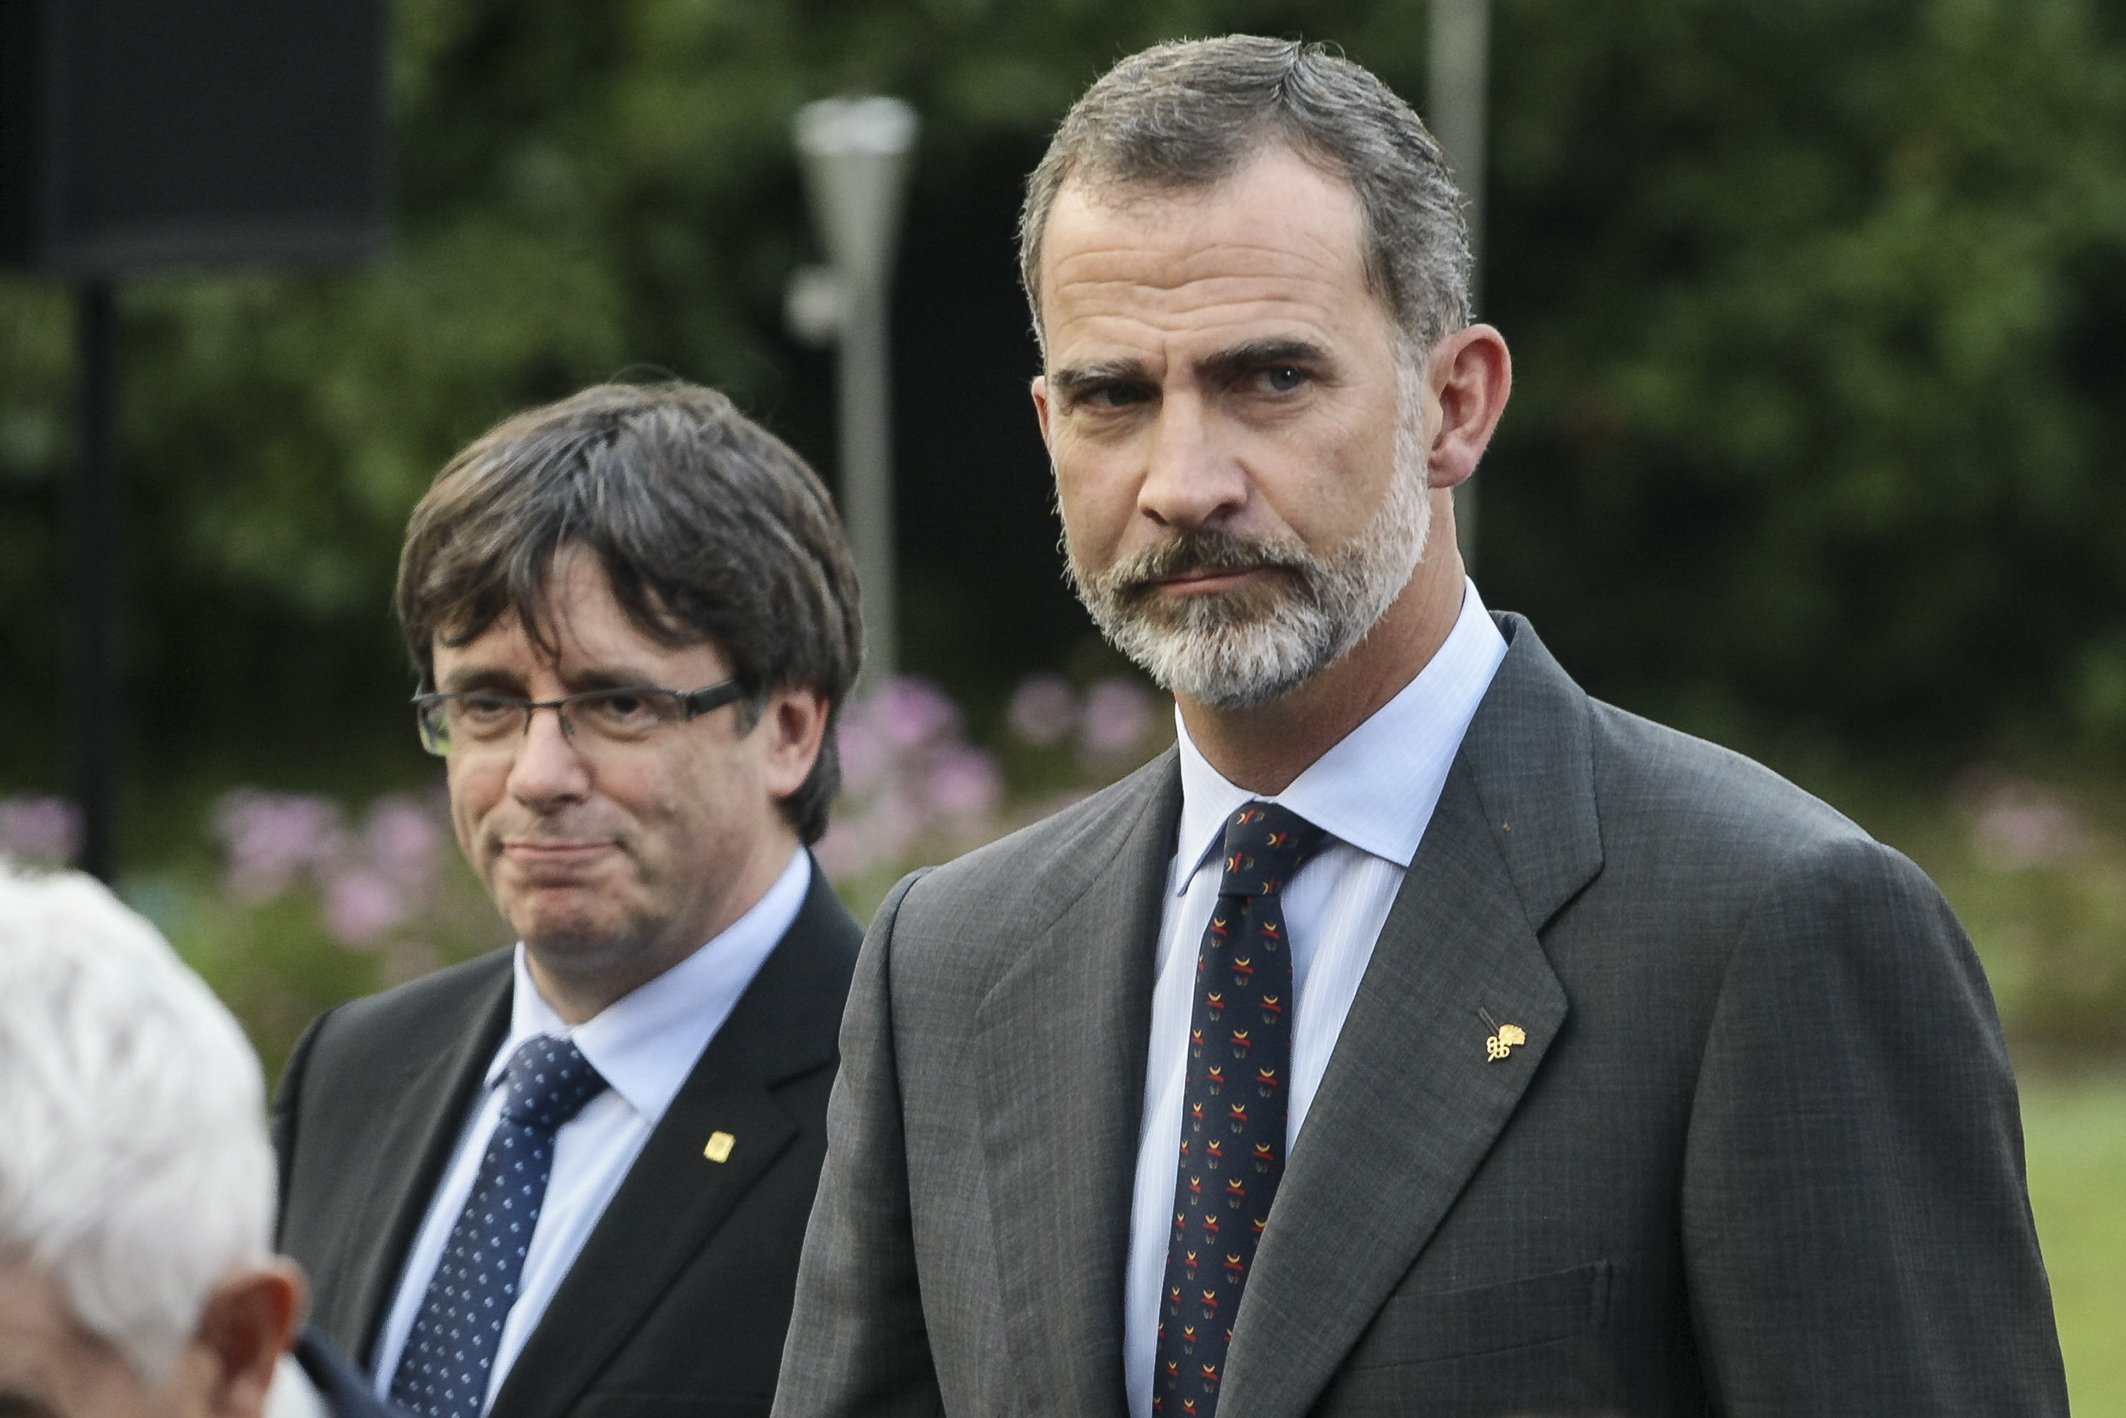 El rey con pulsera de España criticando a Puigdemont: imagen ultra de Felipe